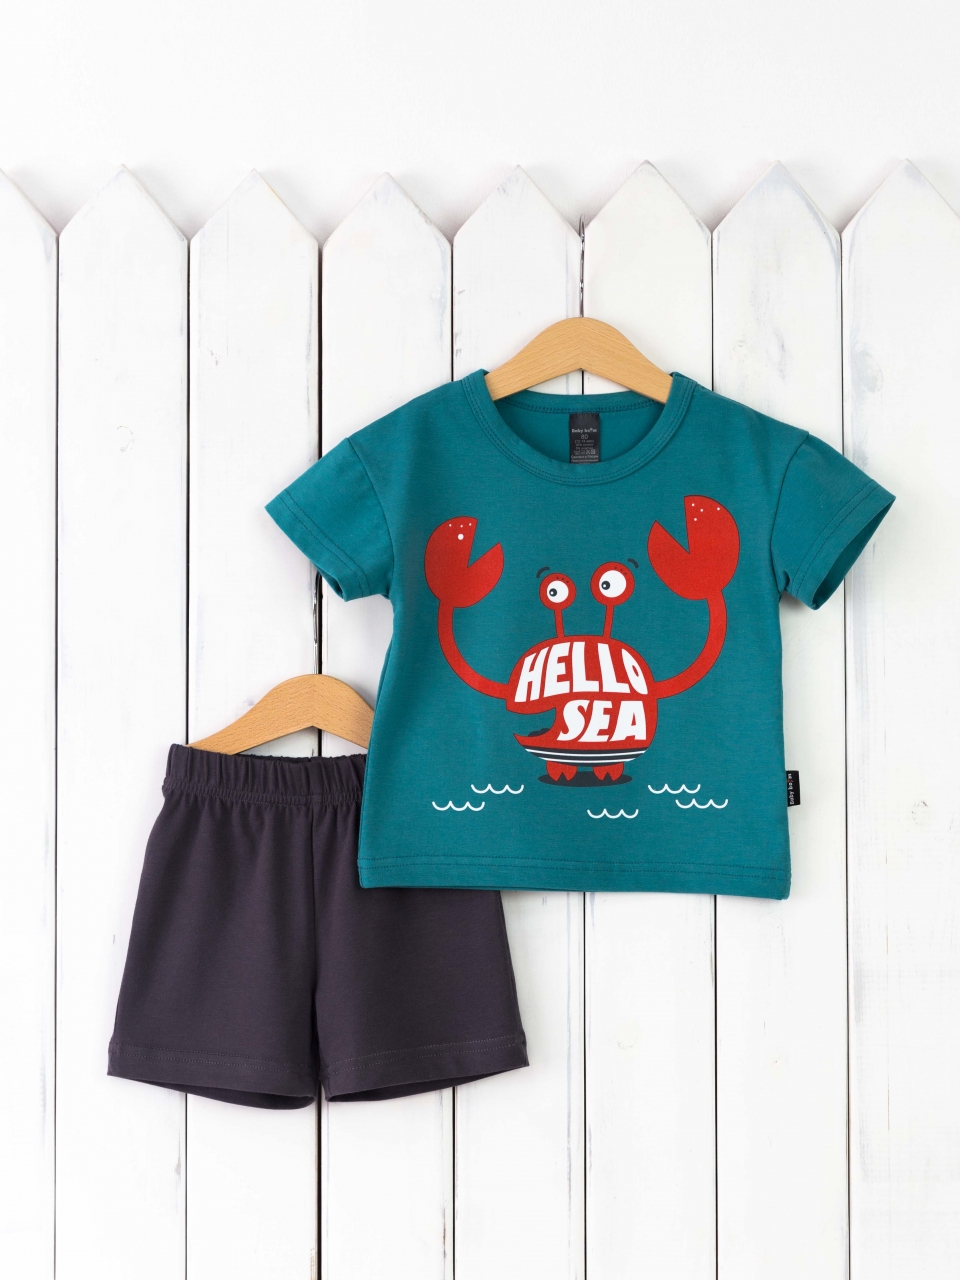 КД467/1-К Комплект р.92 футболка/морская волна+шорты графит Бэби Бум - Набережные Челны 